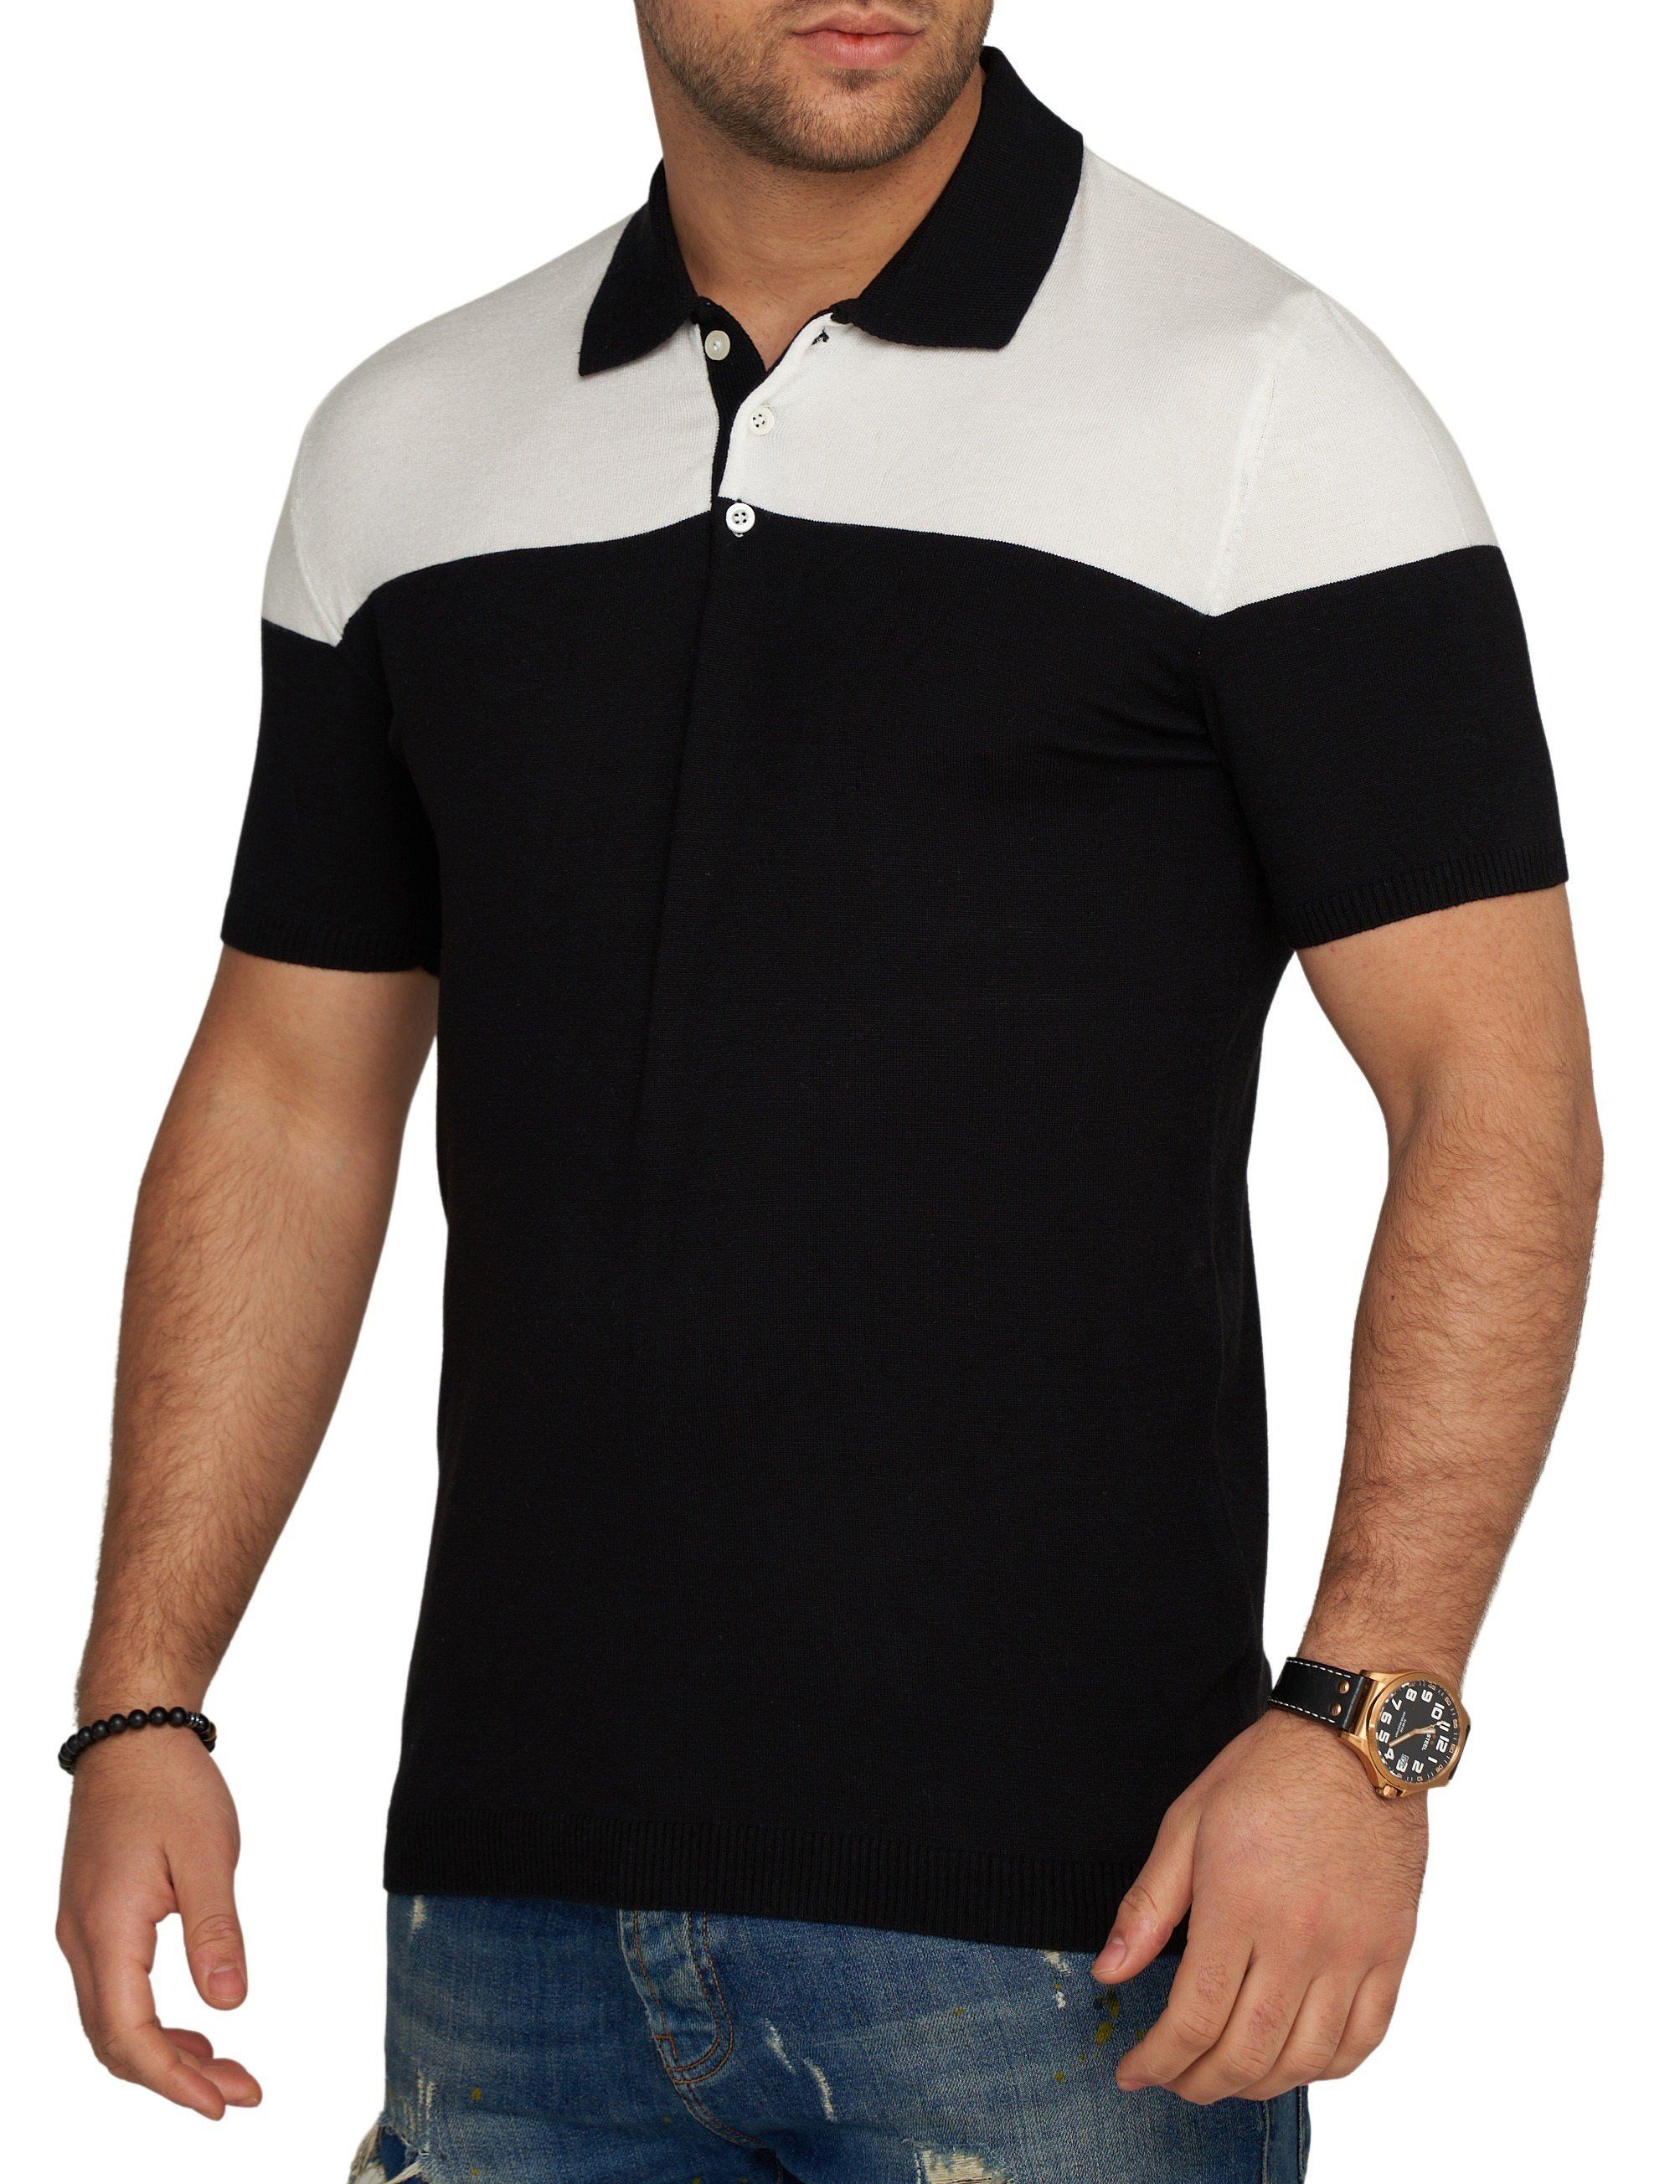 Kurzarm Poloshirt Schwarz Polo Strick T-Shirt CRPARATI Color-Block CARISMA